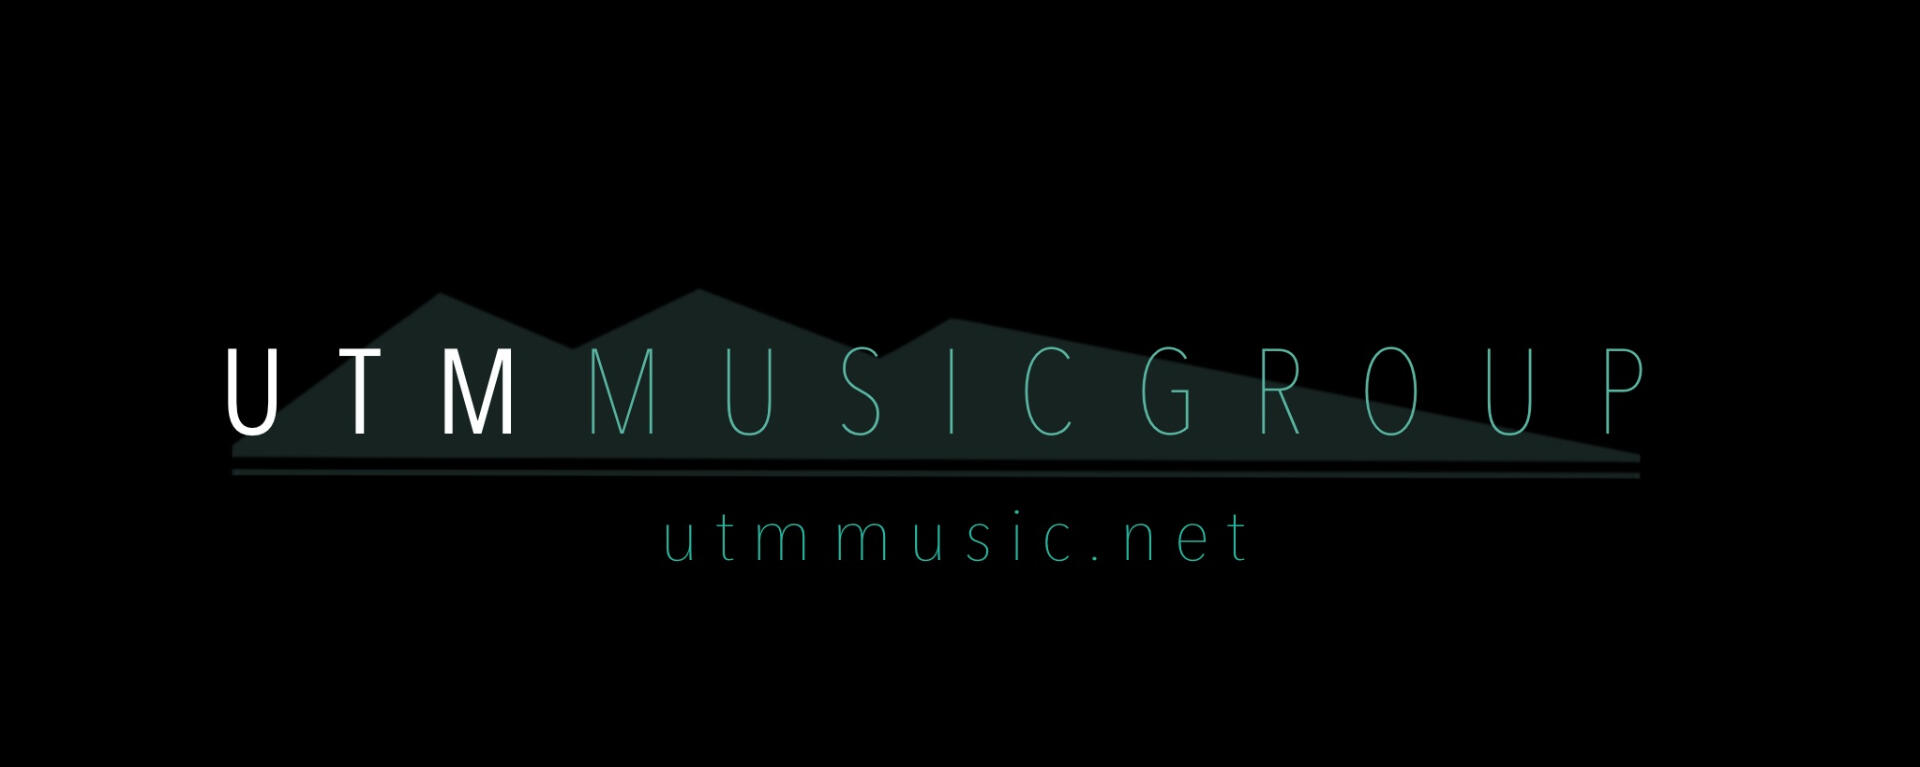 UTM logo design by Georgia Carver